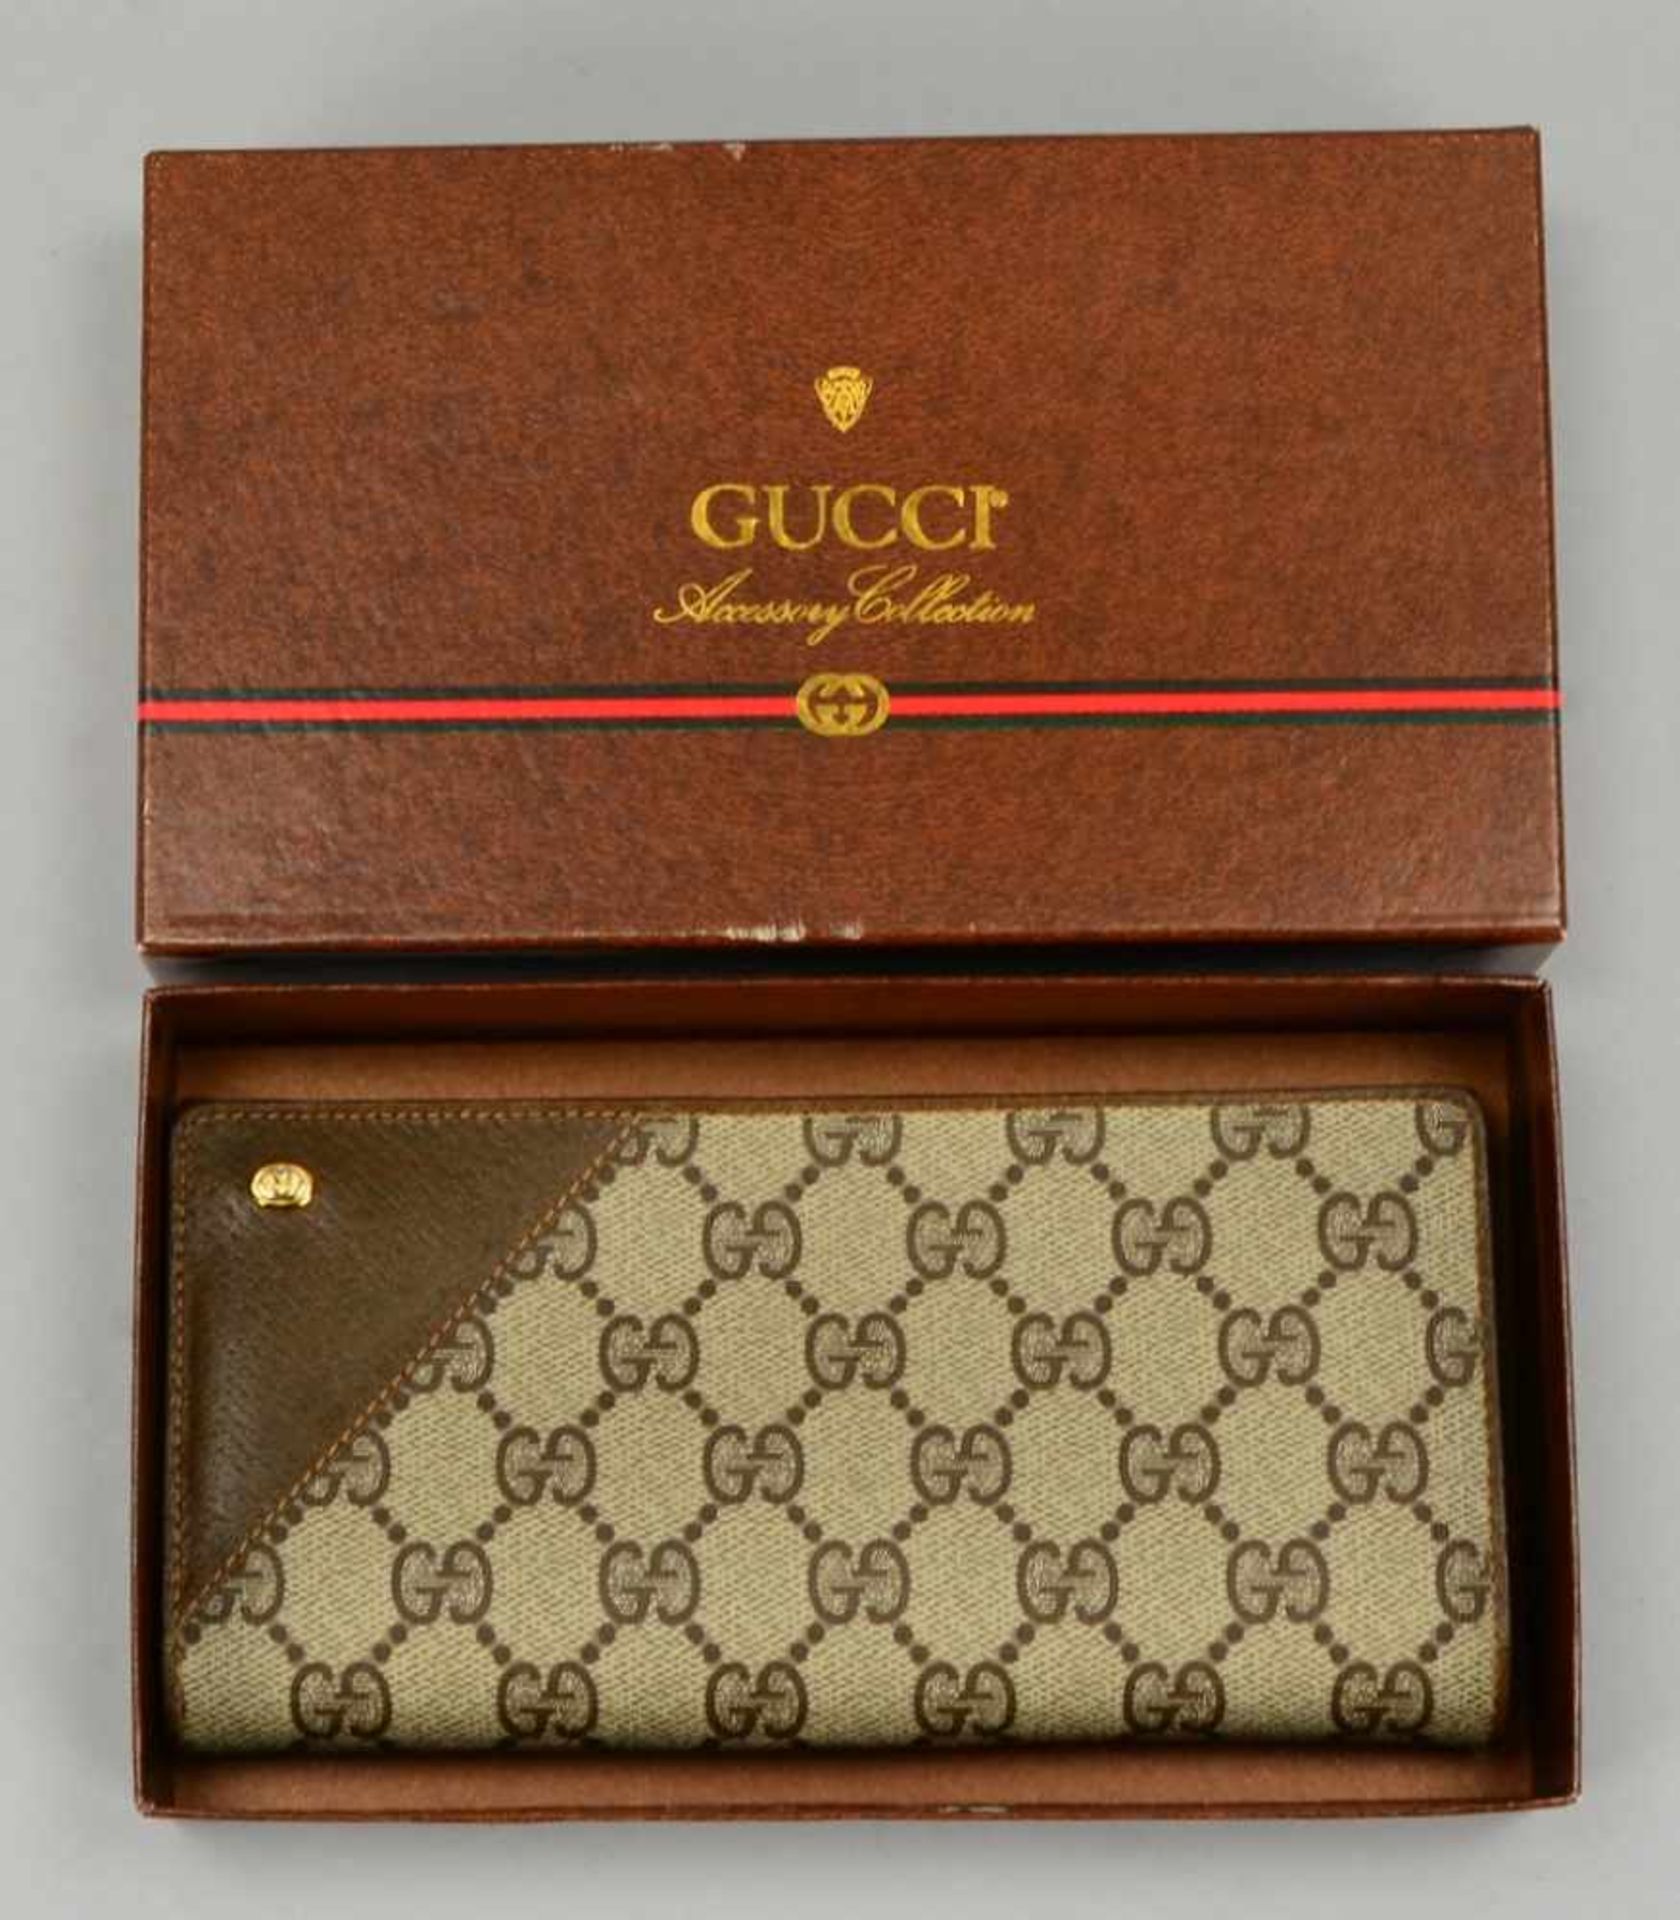 Gucci Accessory Collection, Portemonnaie/Börse, Teilleder, neuwertiger Zustand (unbenutzt), in